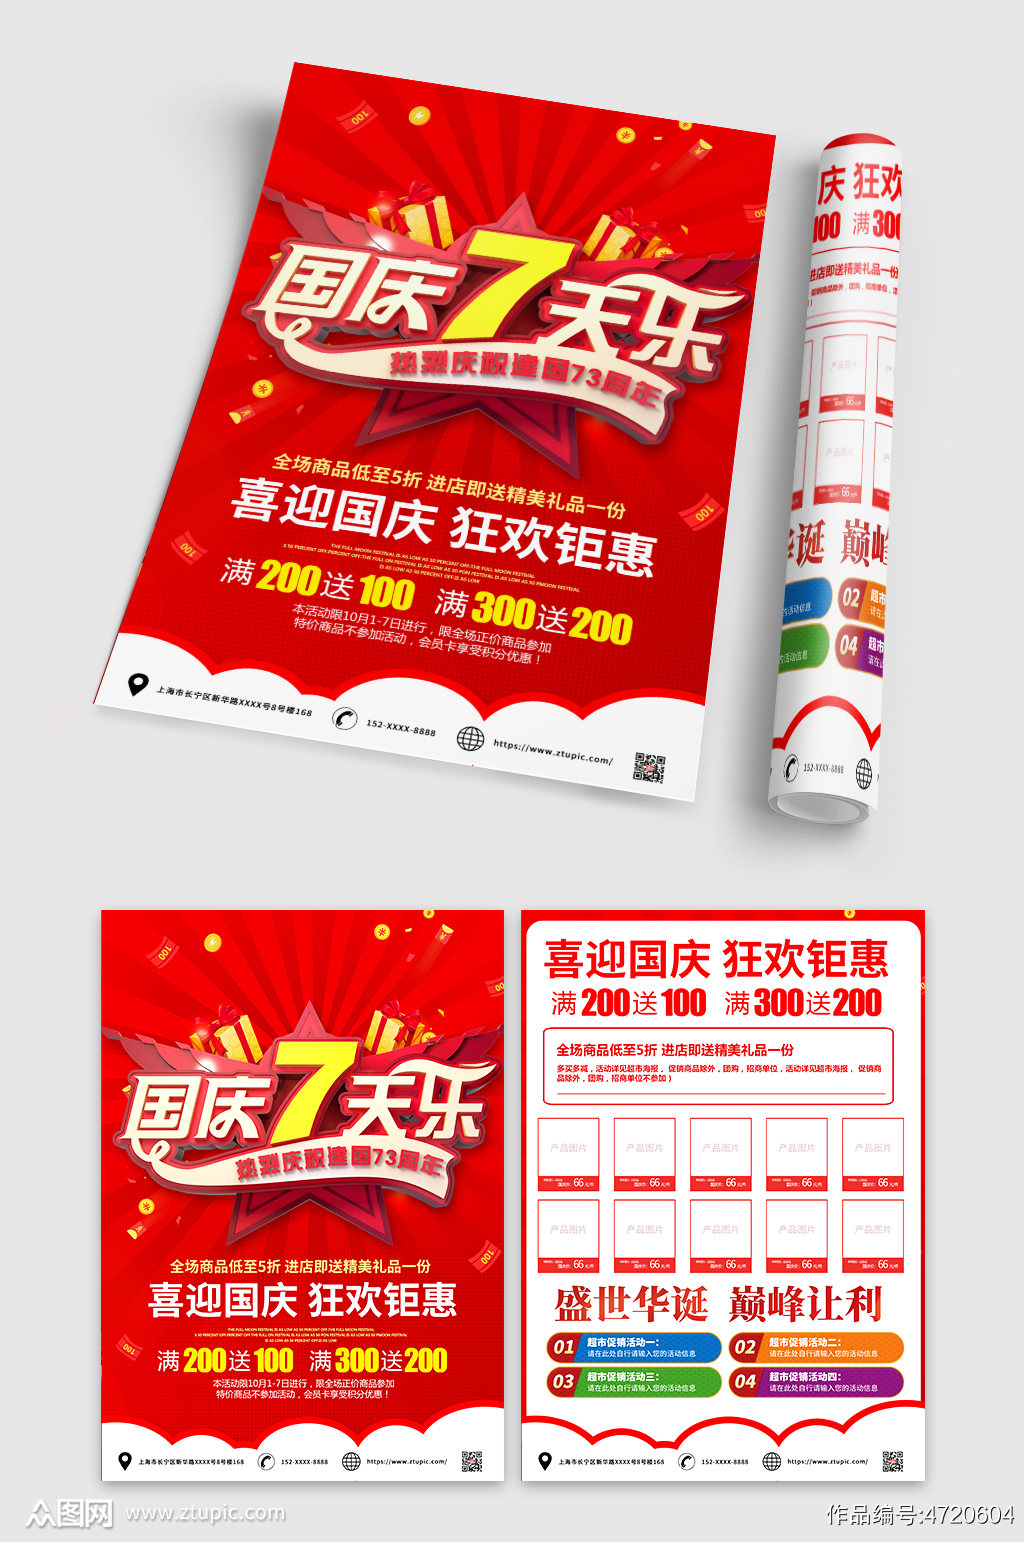 红色国庆节宣传单设计模板素材